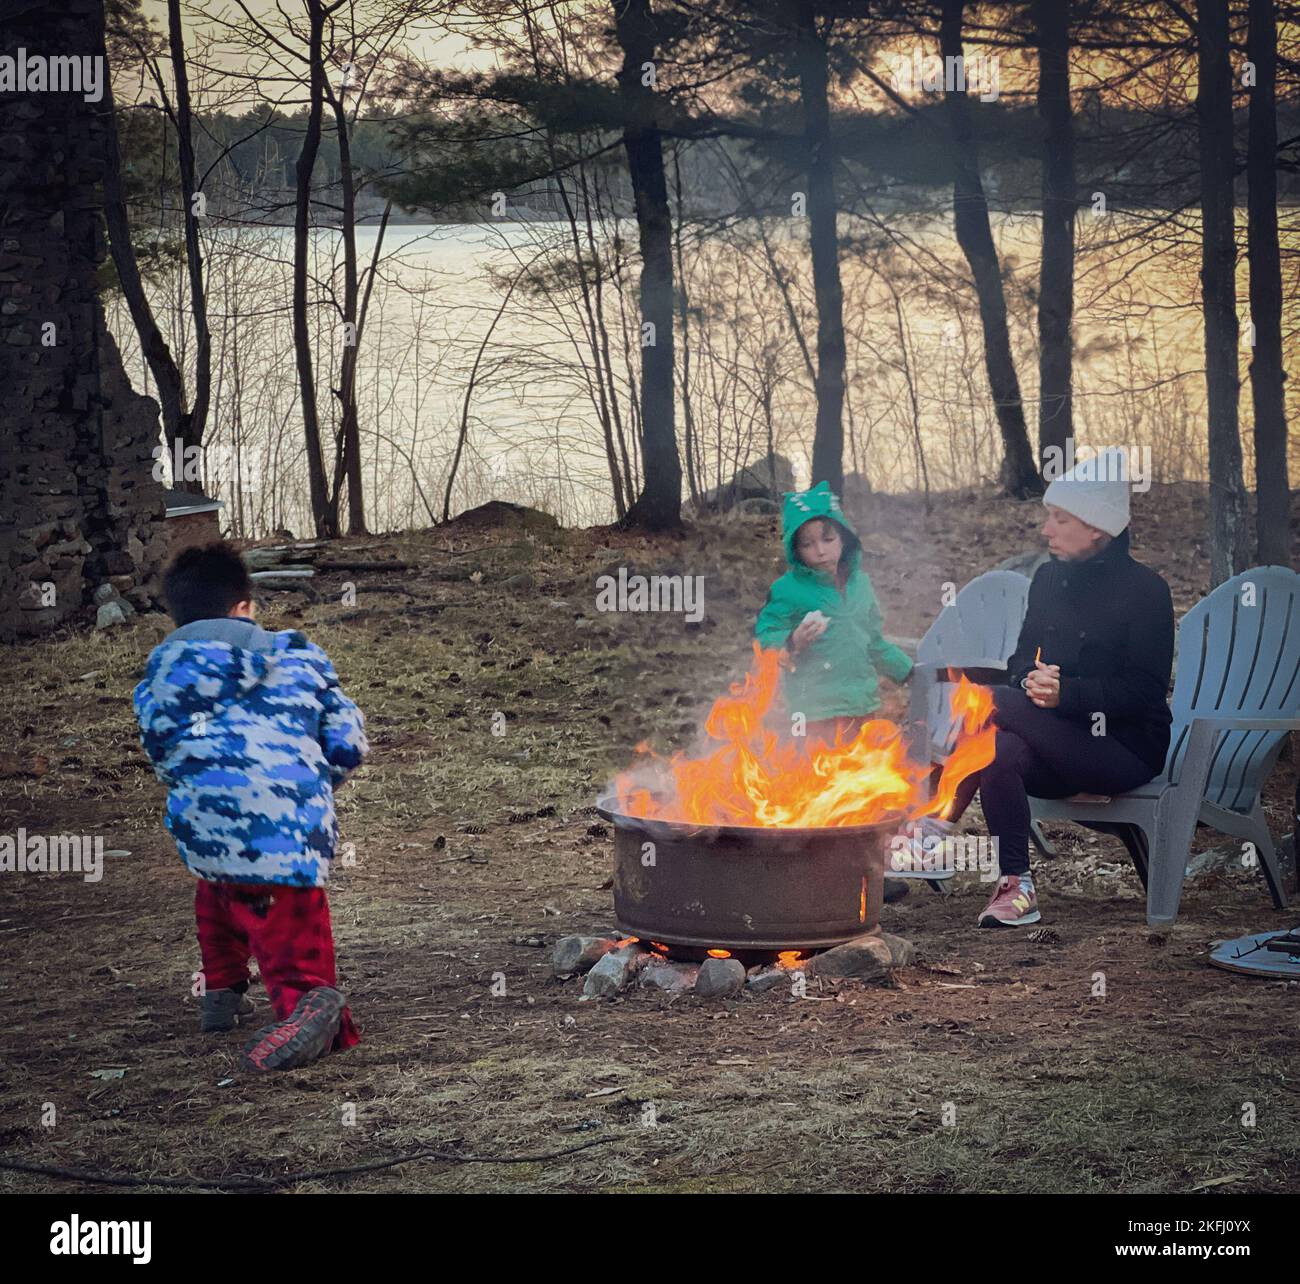 Mutter sitzt auf einem Stuhl und Söhne spielen während des Campens auf dem Land gegen Bäume und See im Wald während des Sonnenuntergangs Stockfoto